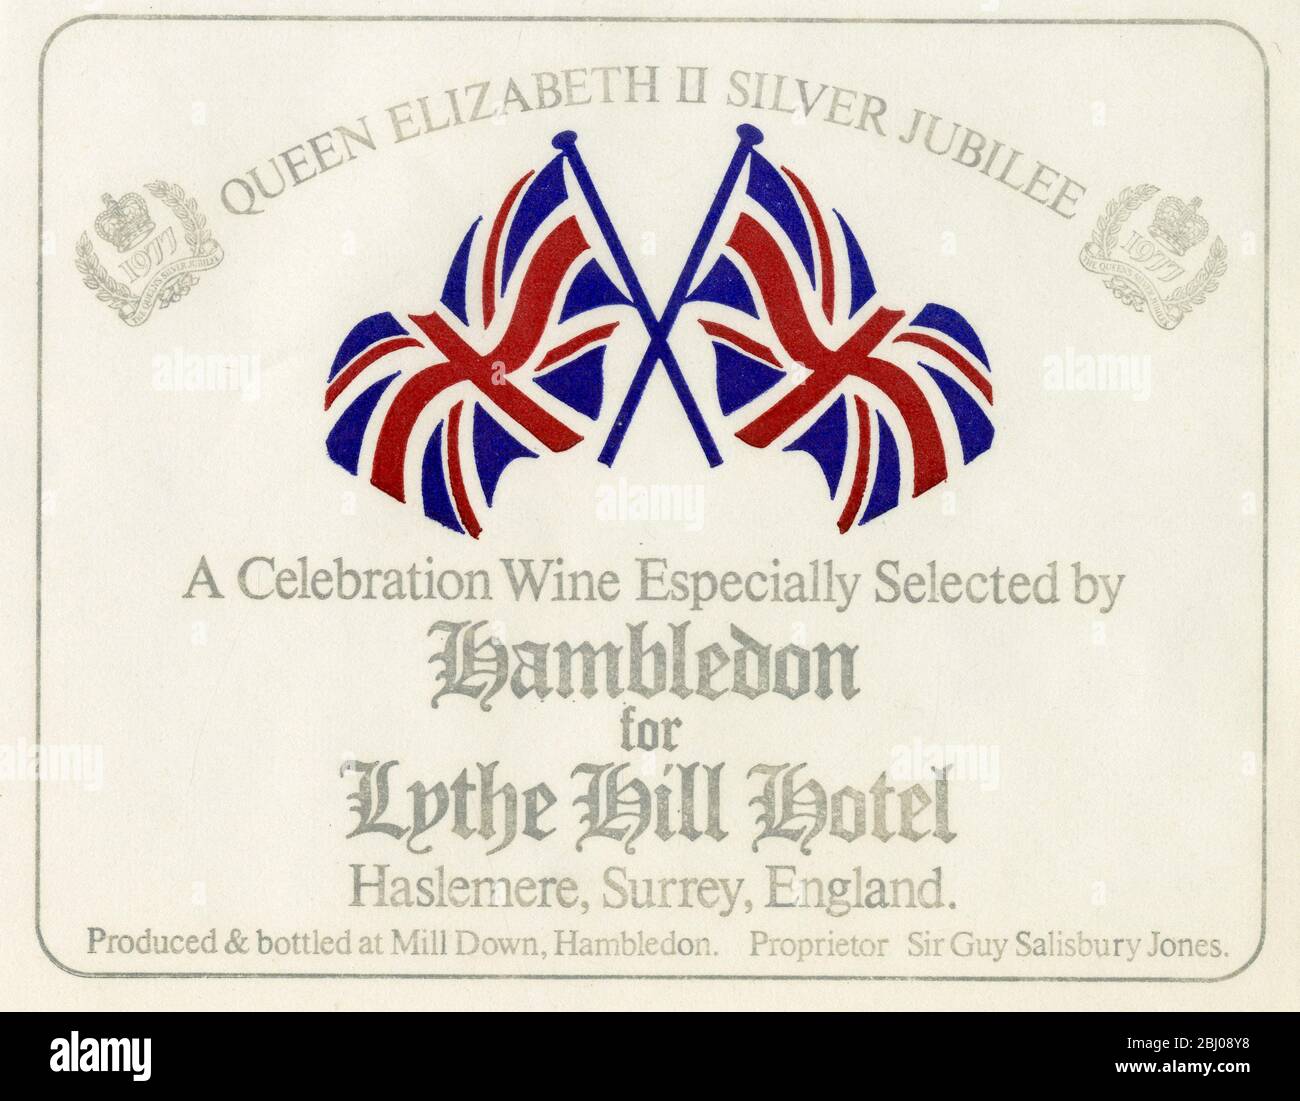 Etiqueta de vino - vino de Hambledon. - un vino de celebración especialmente seleccionado por Hambledon para el Hotel Lythe Hill para el Jubileo de Plata de la Reina Isabel II. Producido y embotellado por Sir Guy y Lady Salisbury - Jones en un viñedo en Hambledon, Hampshire. - 1977 Foto de stock